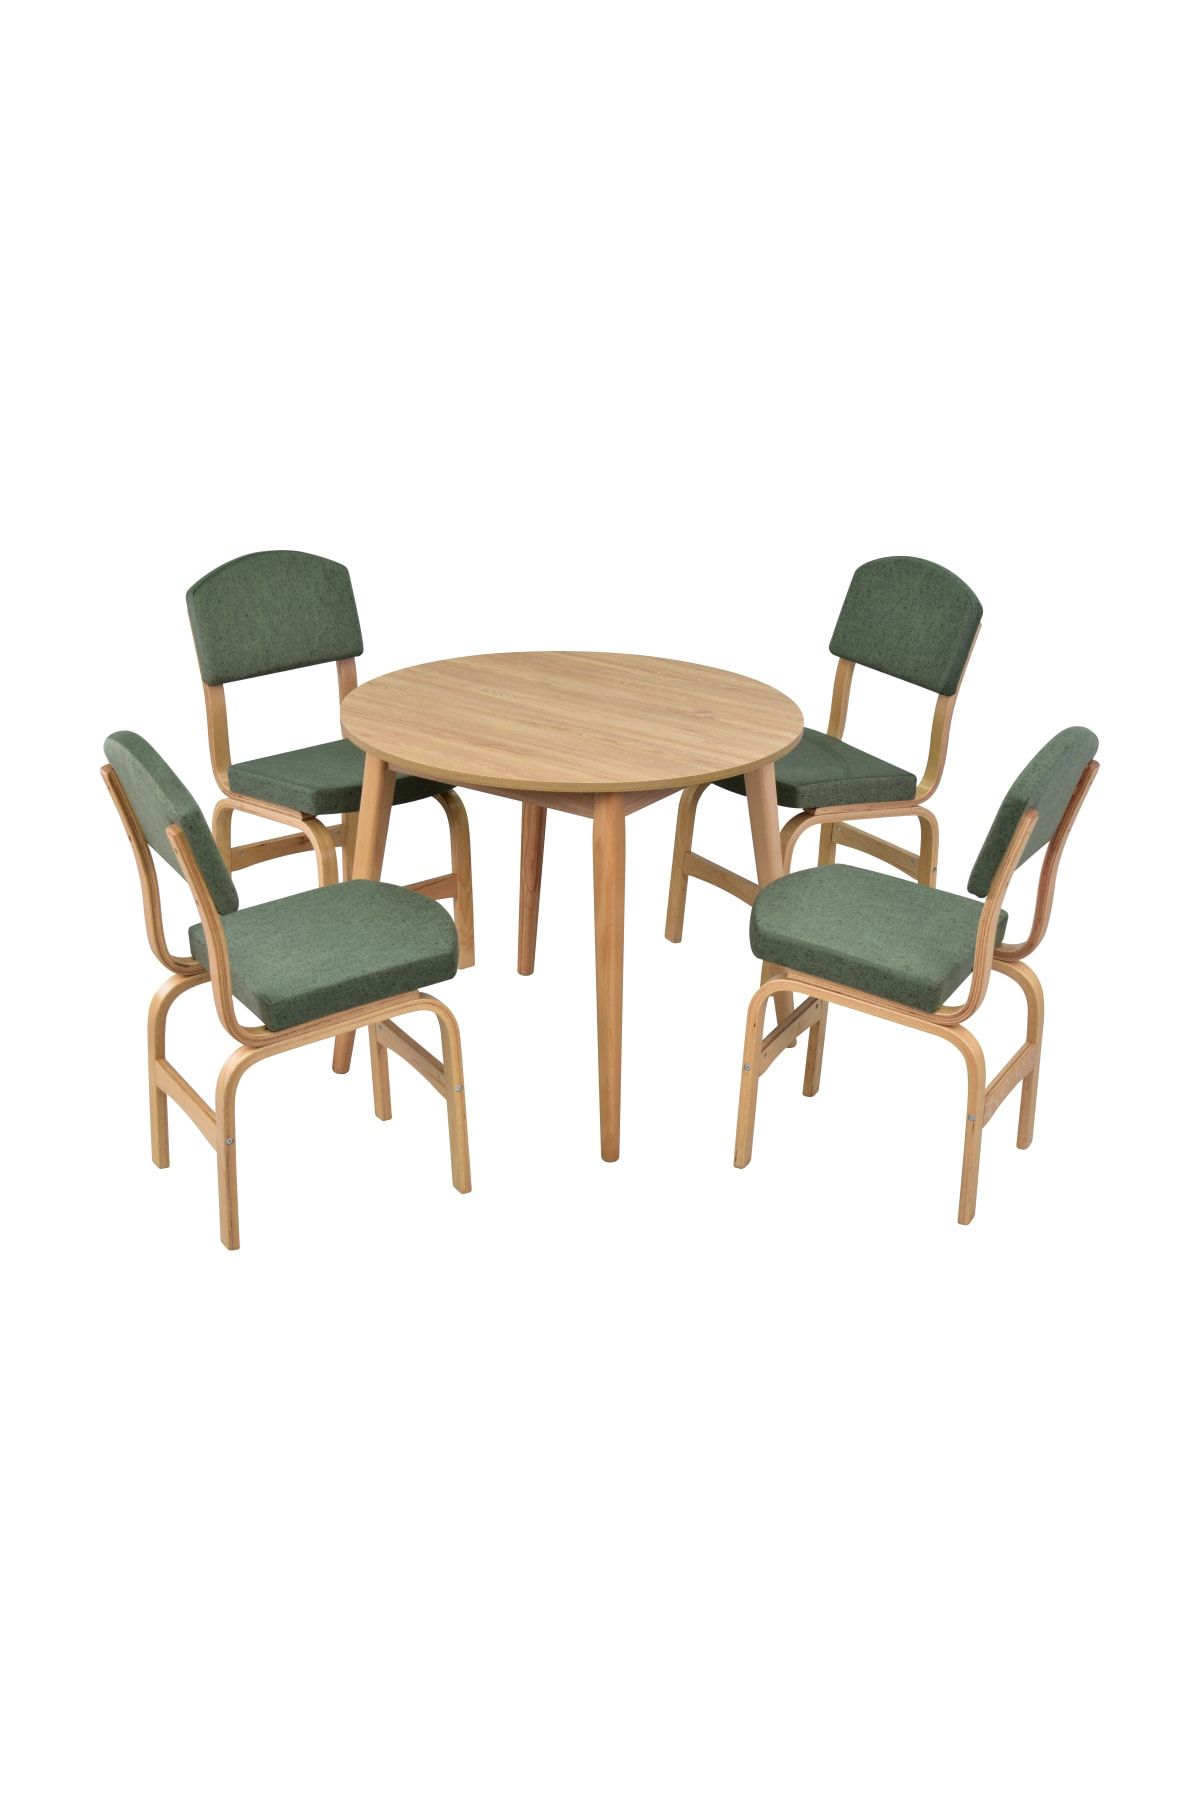 VİLİNZE Ege Sandalye Avanos Mdf Yuvarlak Ahşap Mutfak Masası Takımı - 90x90 Cm